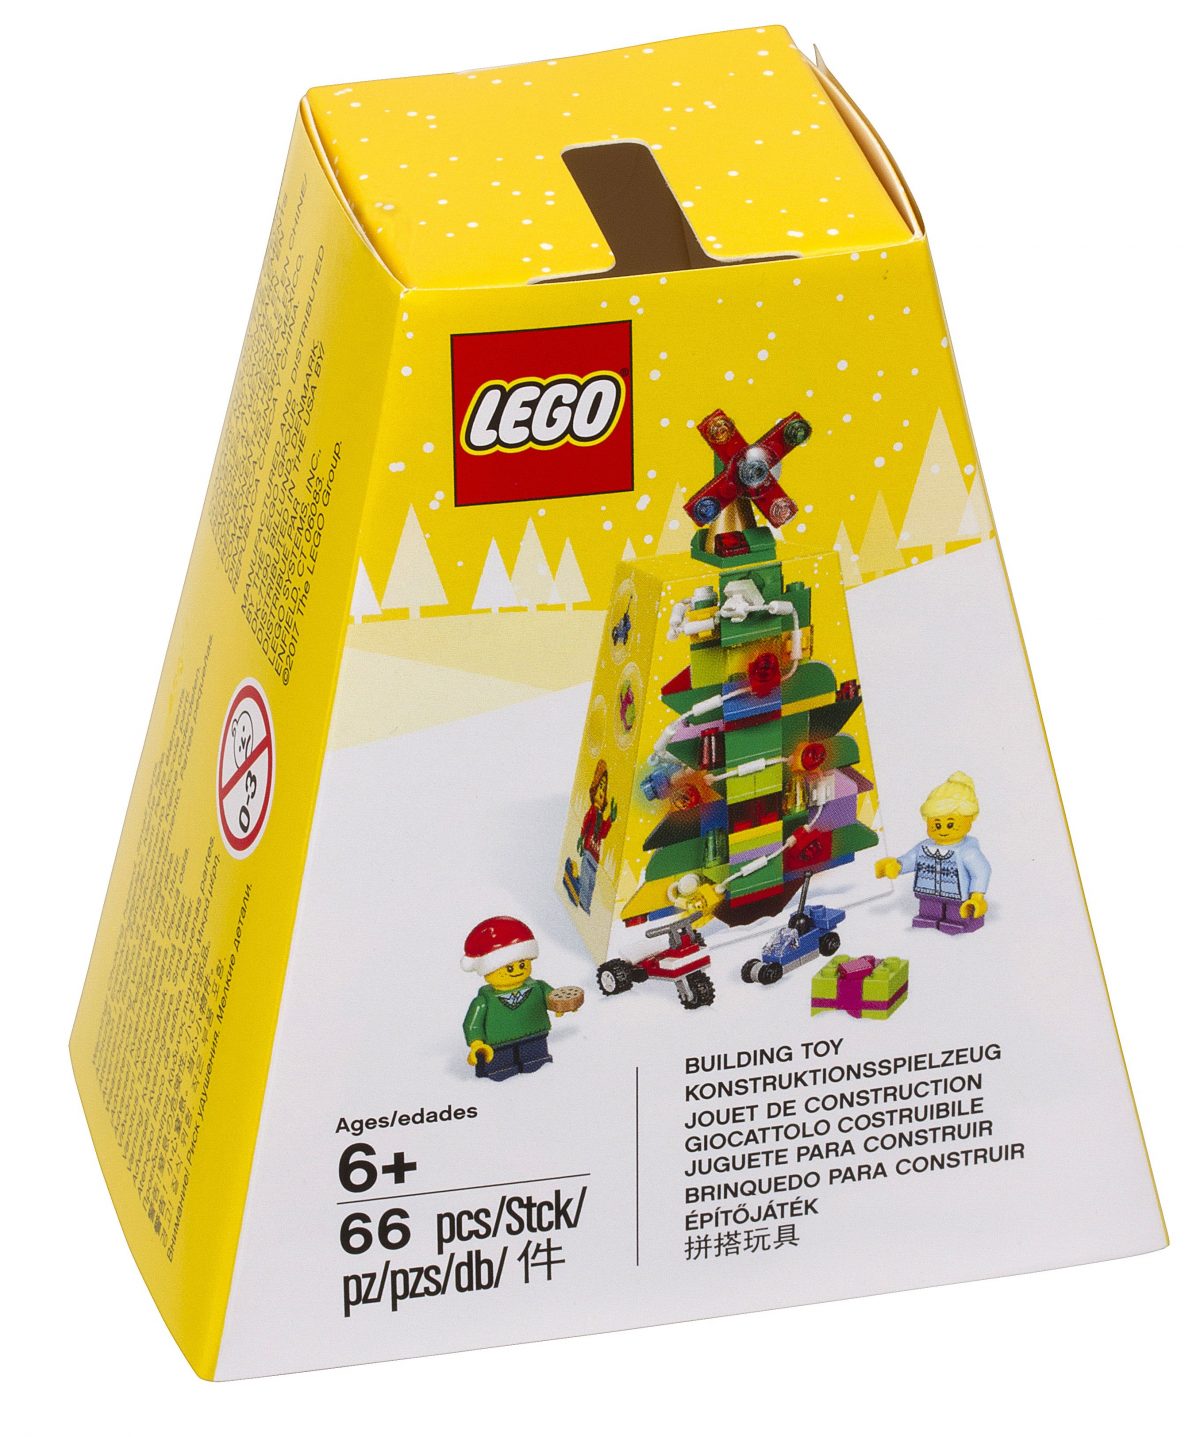 Albero Di Natale Lego.Svelato Il Set Lego Di Natale Christmas Ornament 5004934 Mattonito